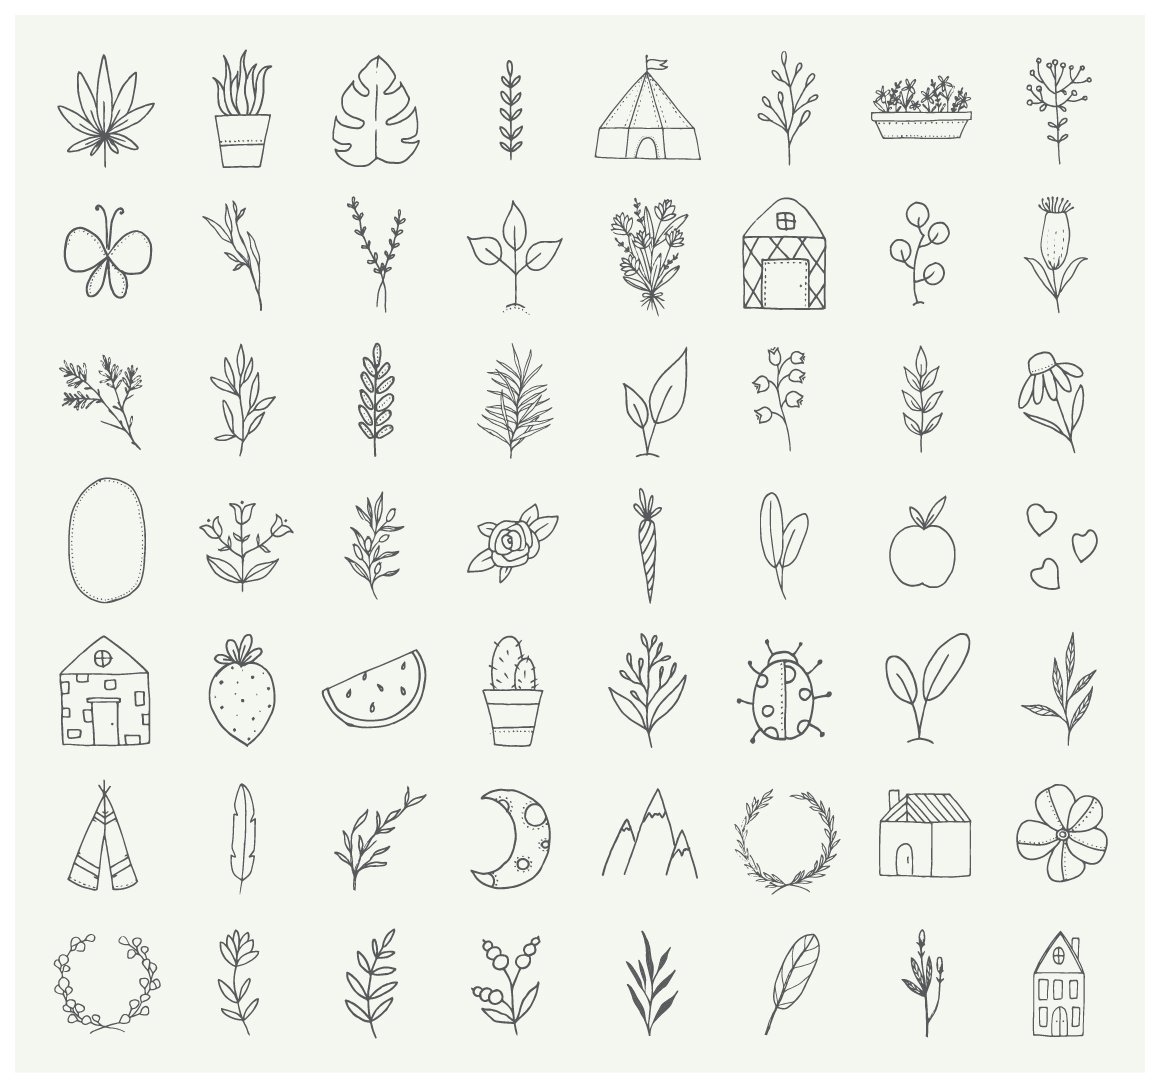 Nature & Plants Minimalist Doodles